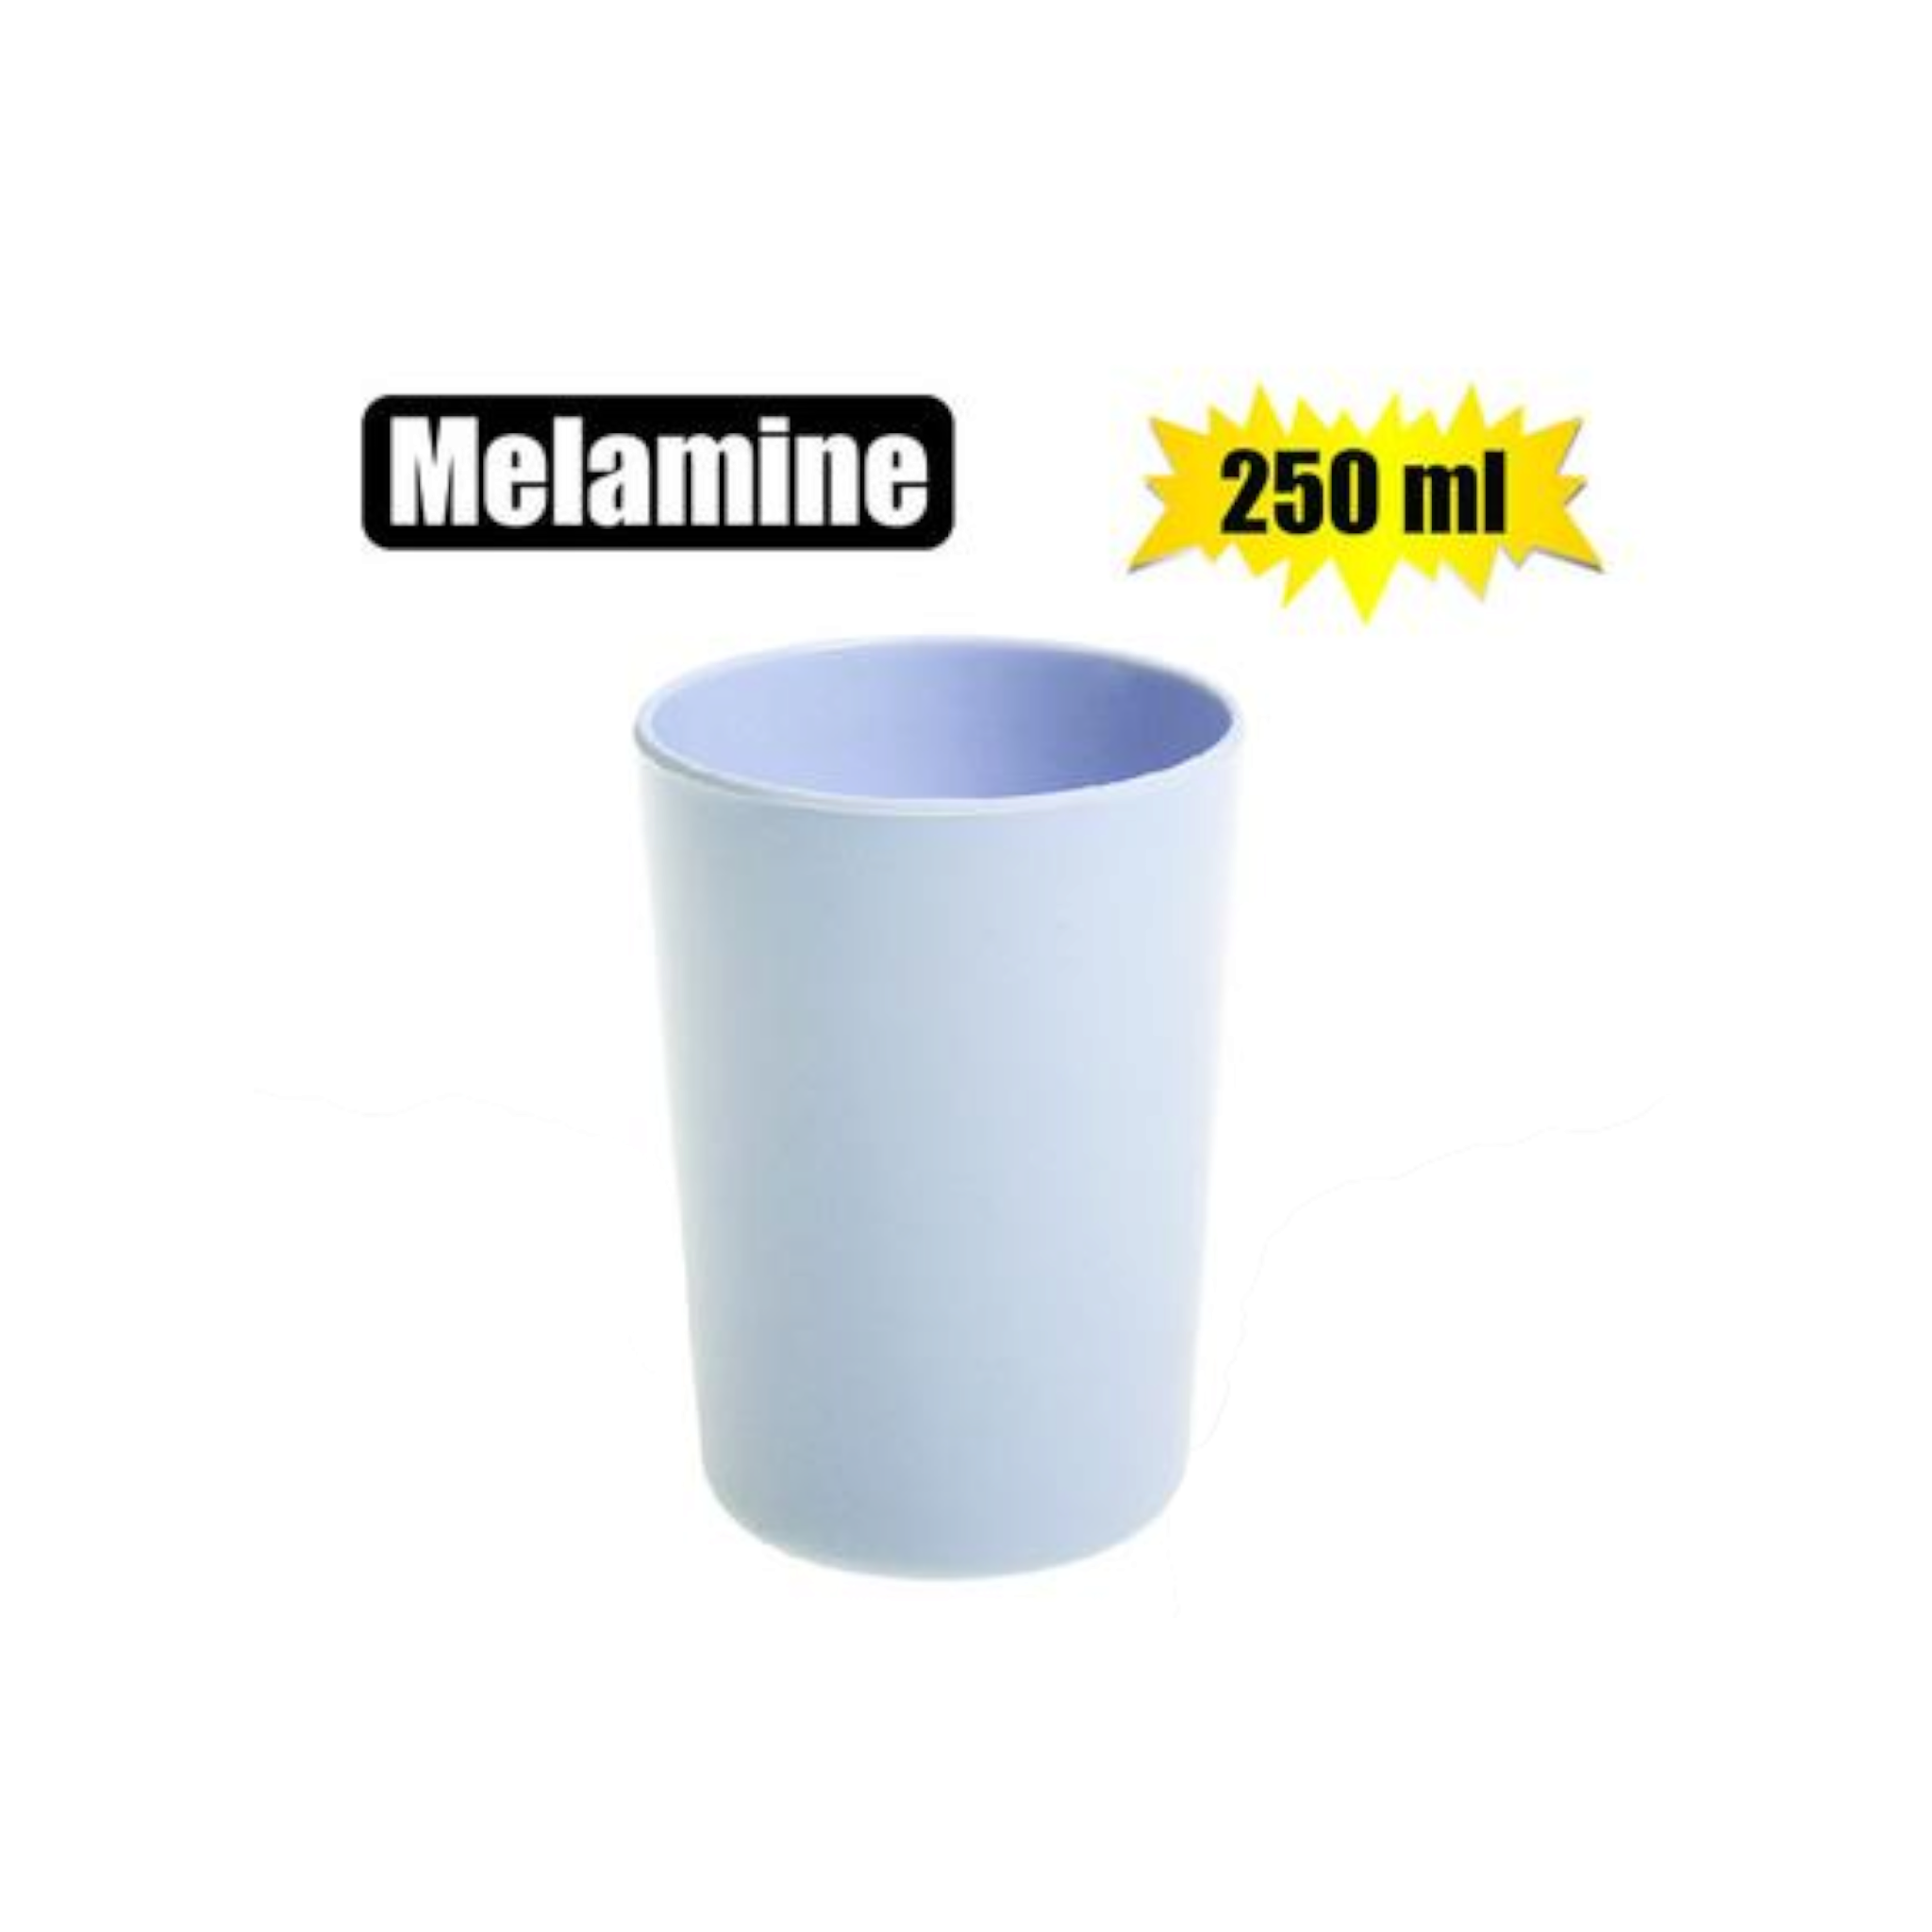 Melamine Tumbler 250ml White